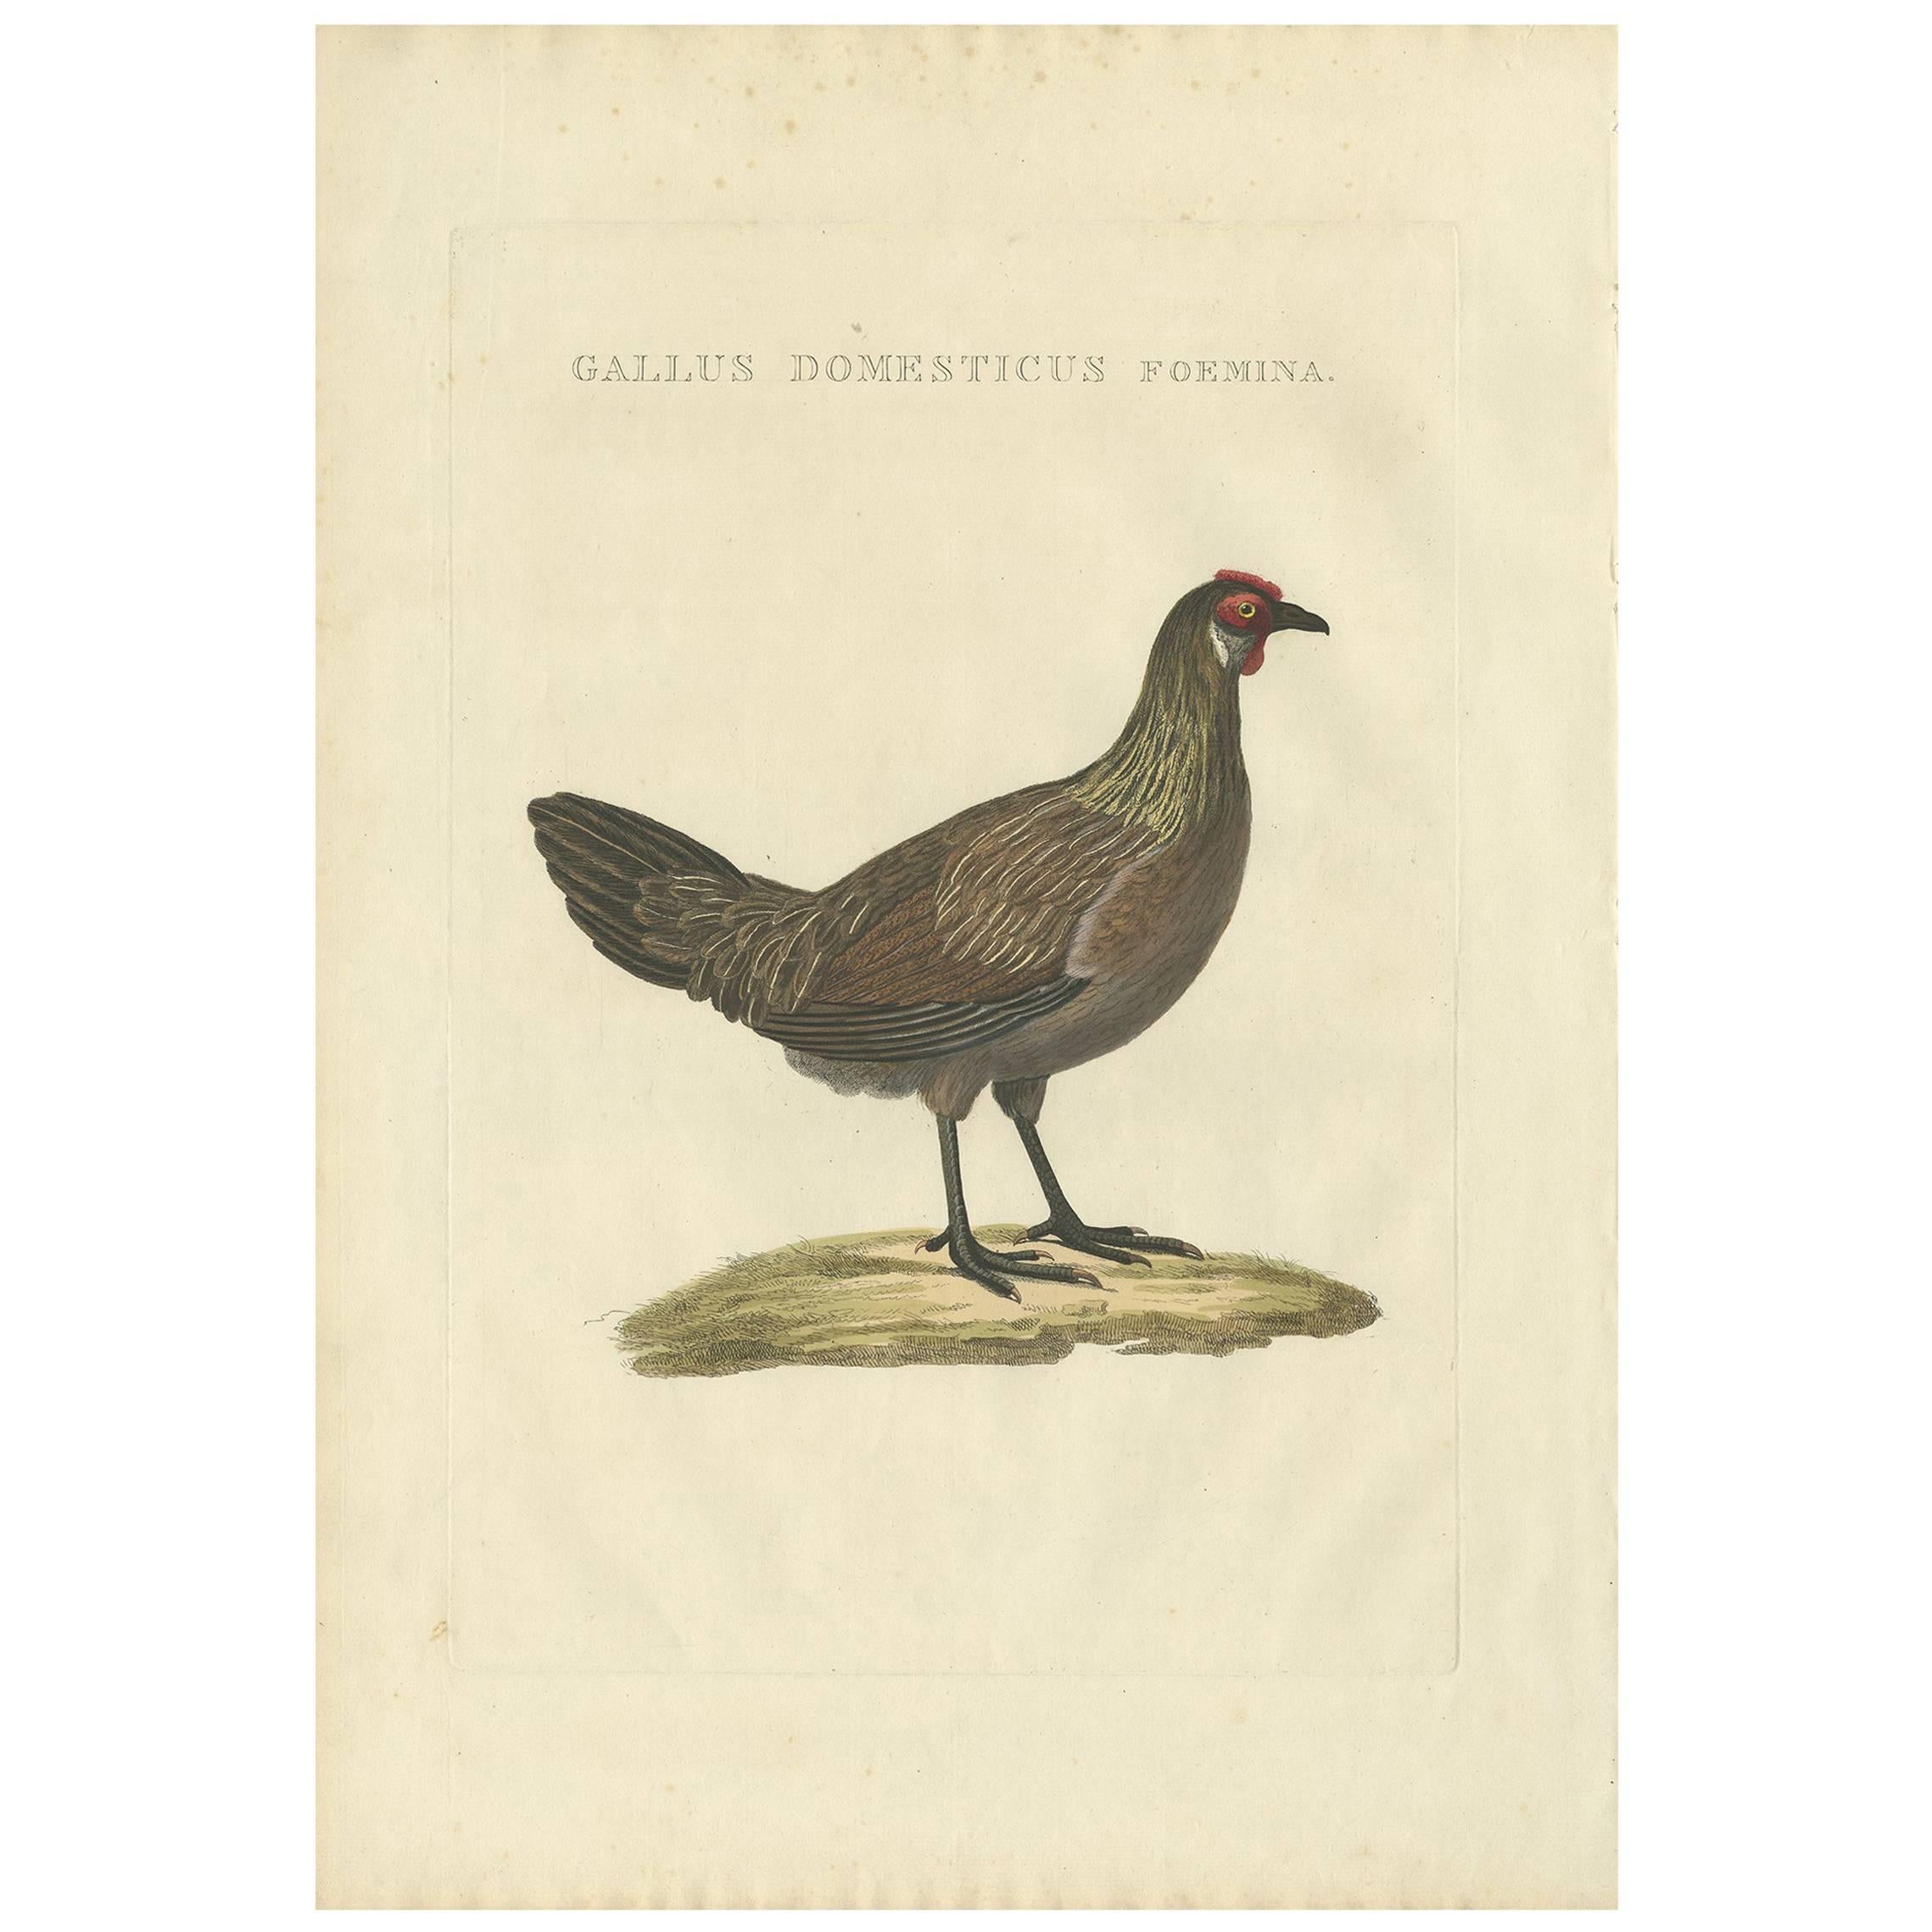 Antique Bird Print of a Chicken by Sepp & Nozeman, 1829